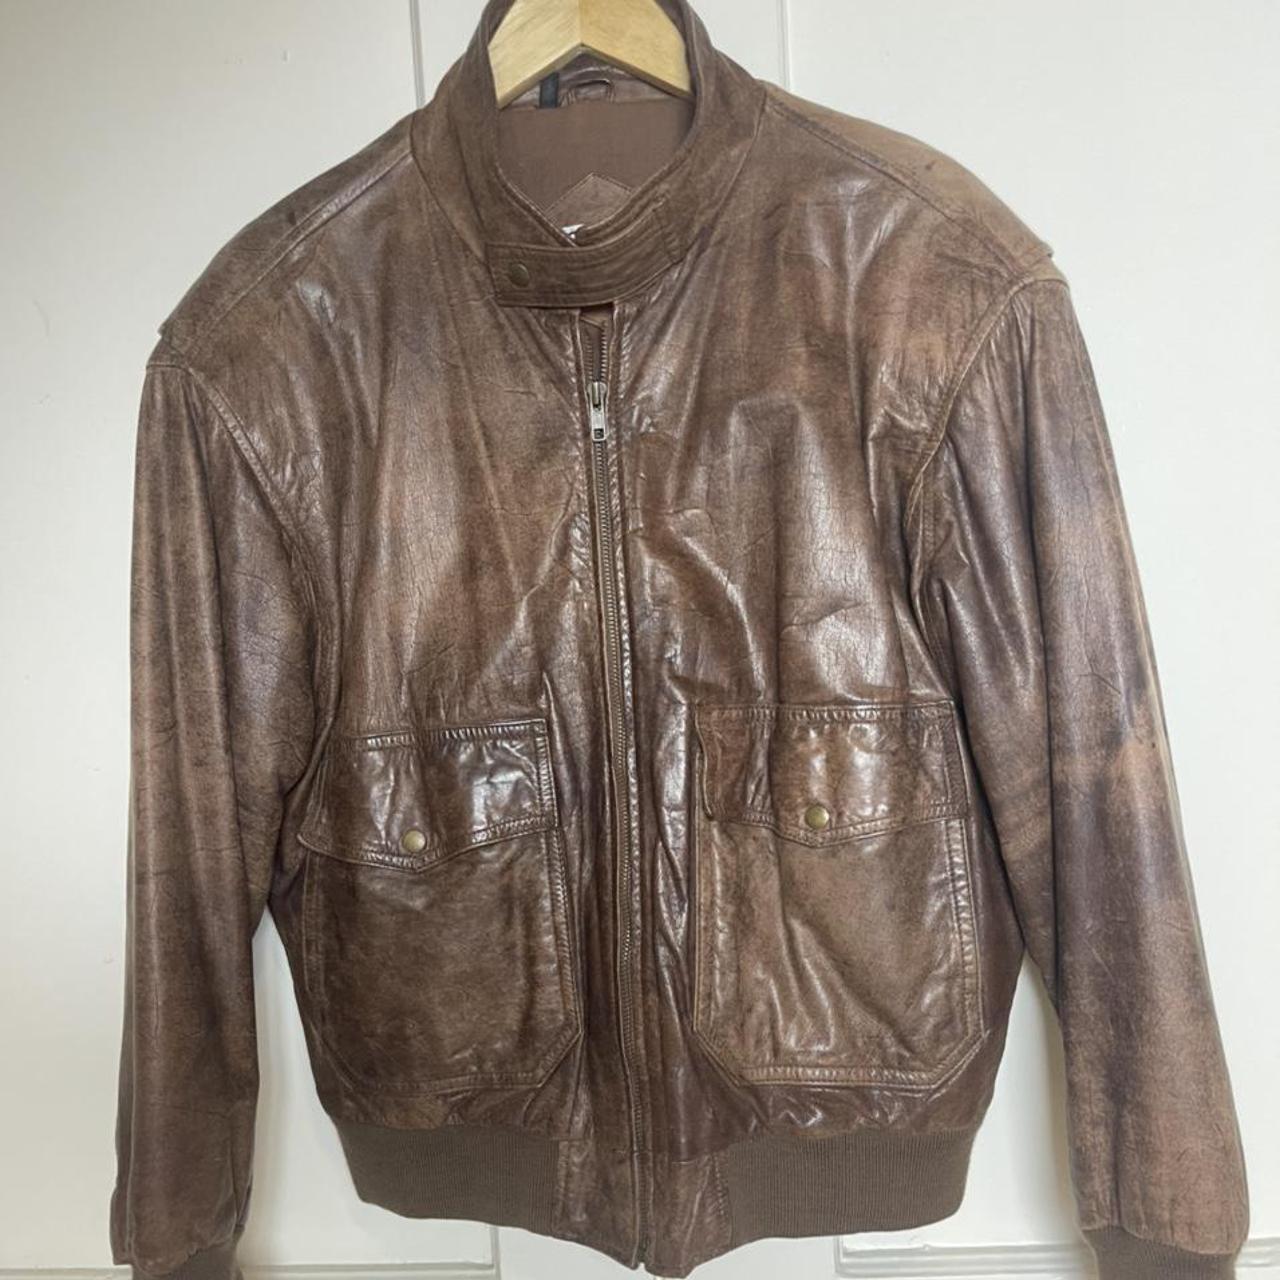 Vintage Avanti bomber jacket. Brown... - Depop